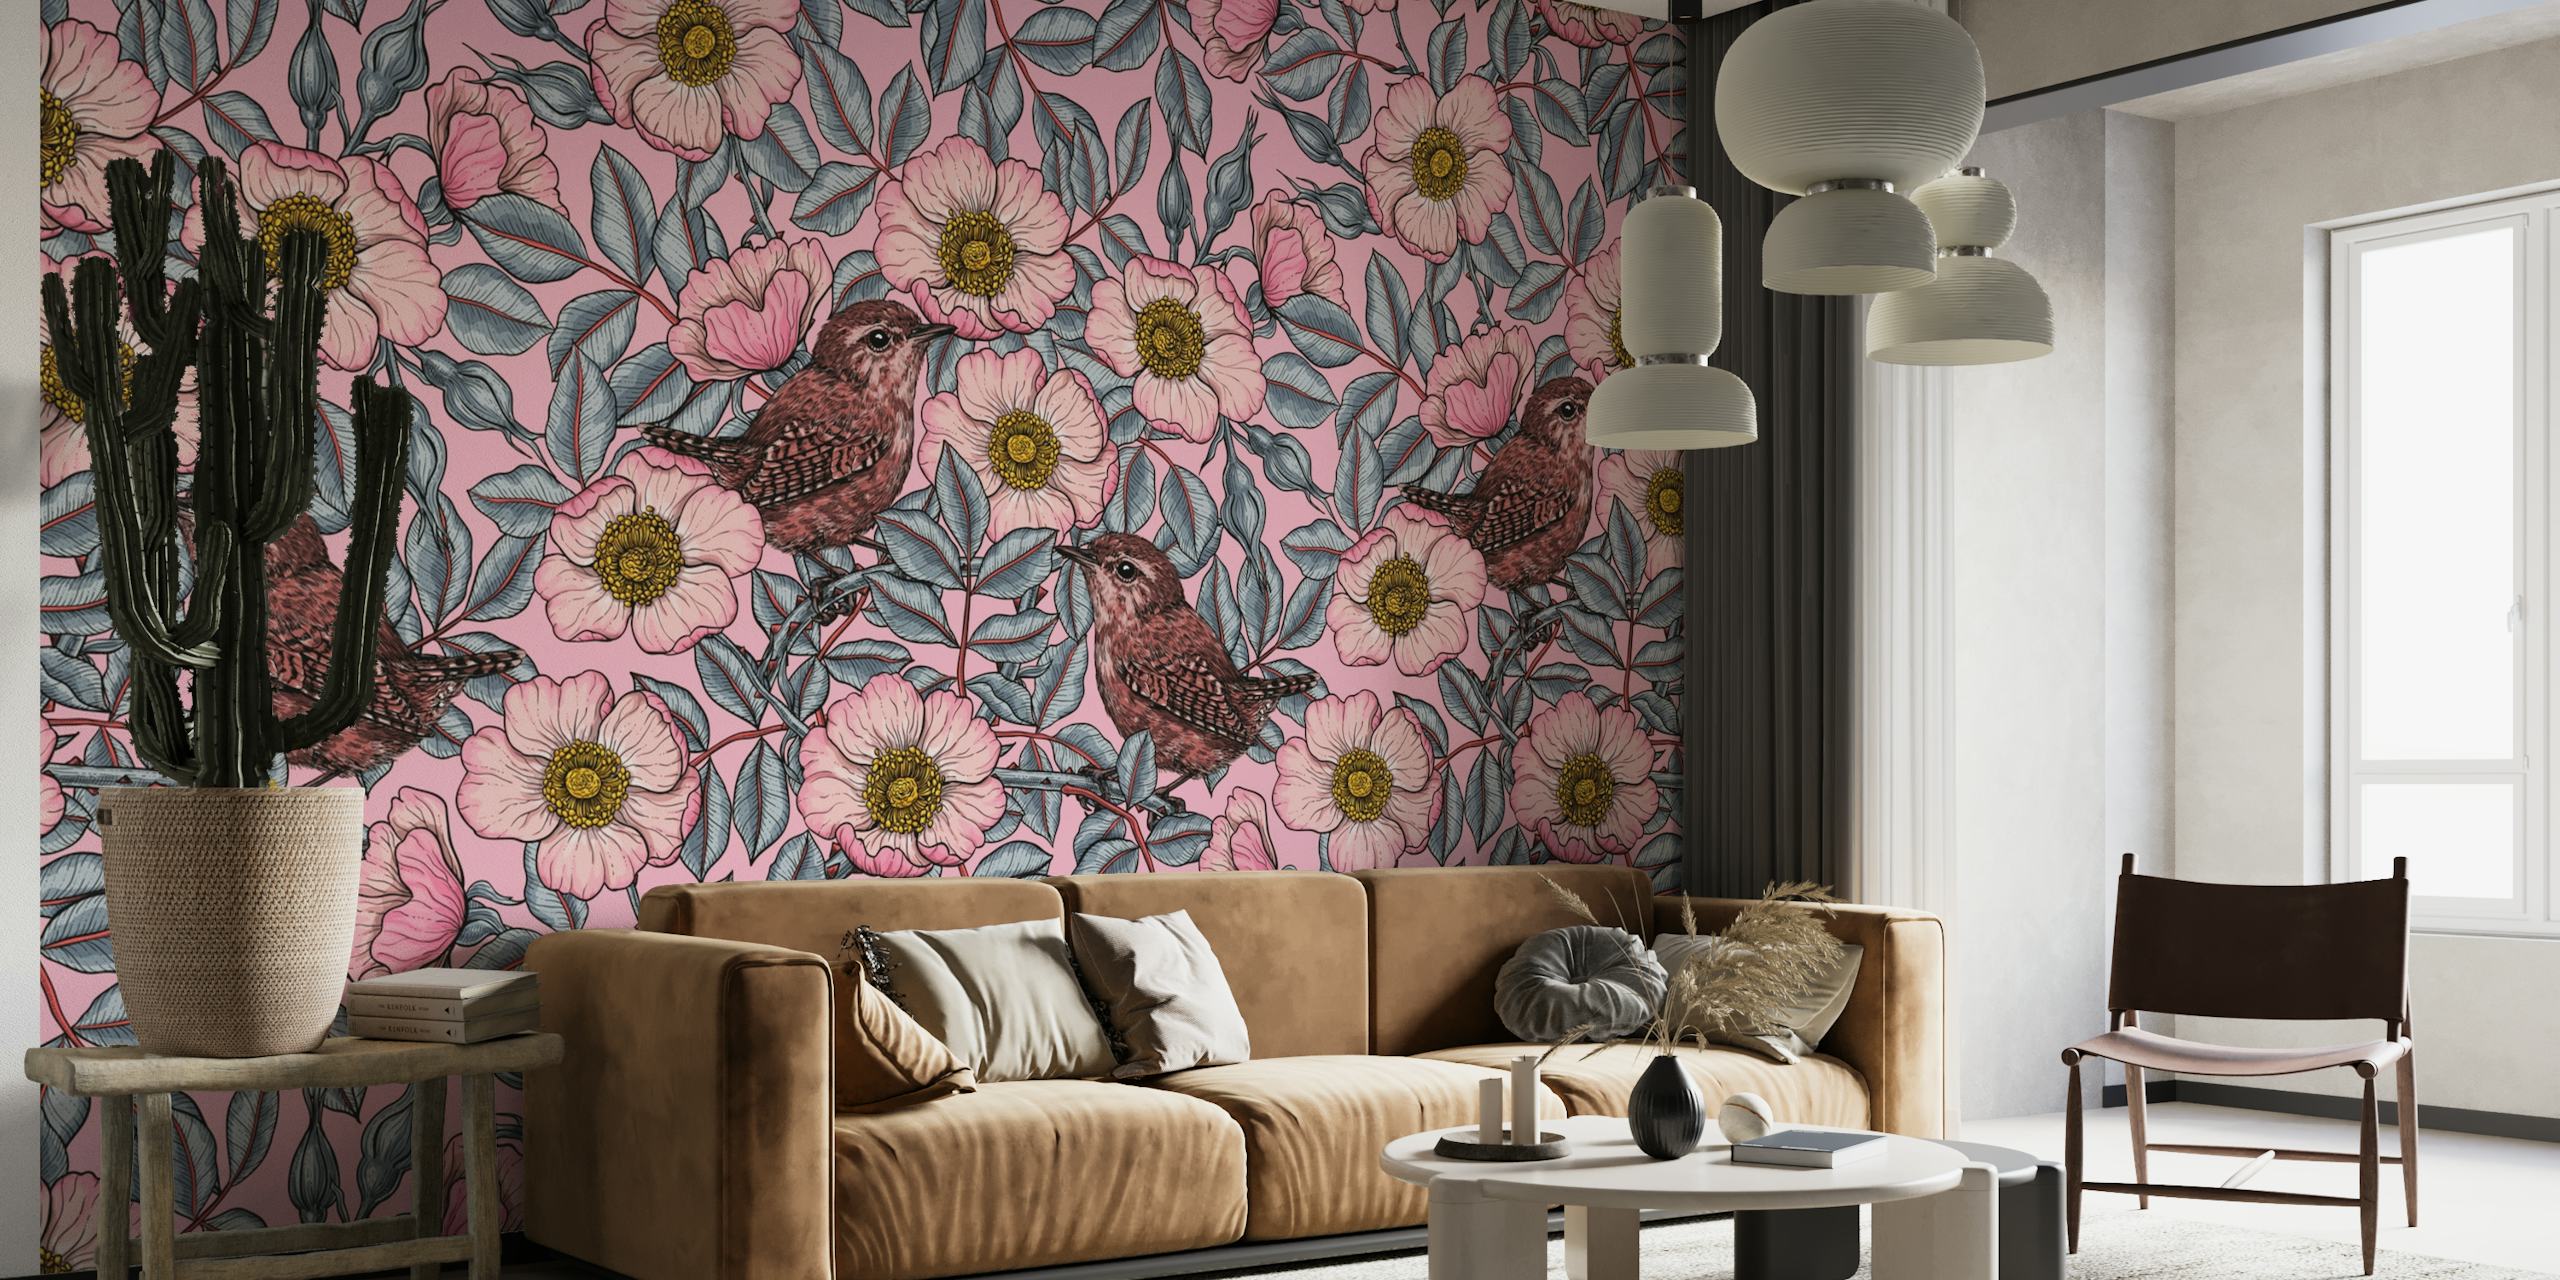 Seinätapetti wrensistä kukkivien ruusujen keskellä vintage-vaikutteisella väripaletilla